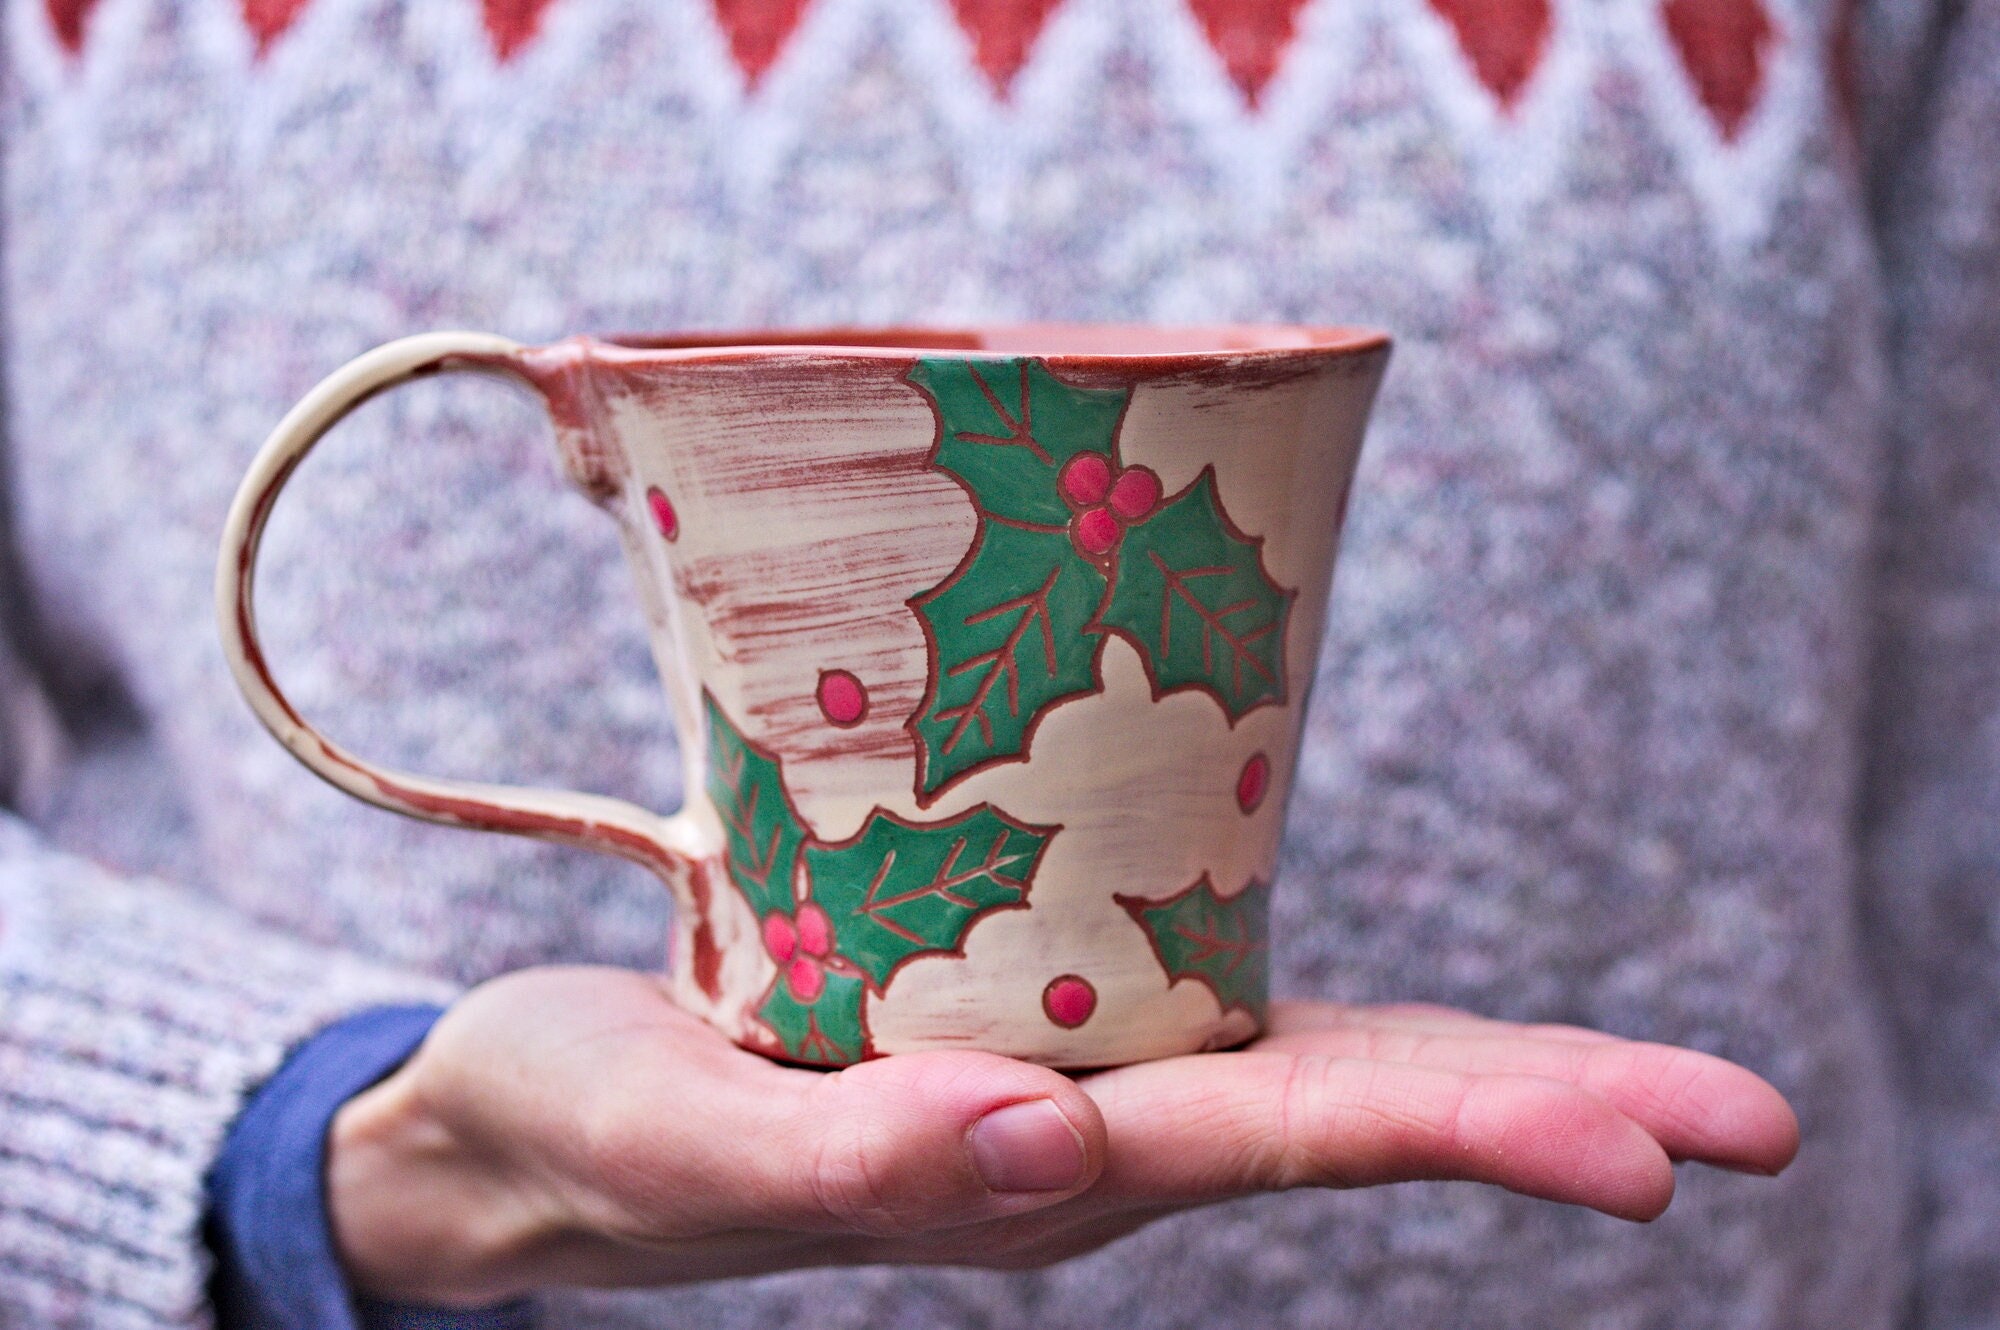 Théière tisanière thème chat mug porcelaine filtre couvercle peint main  artisanal - Un grand marché